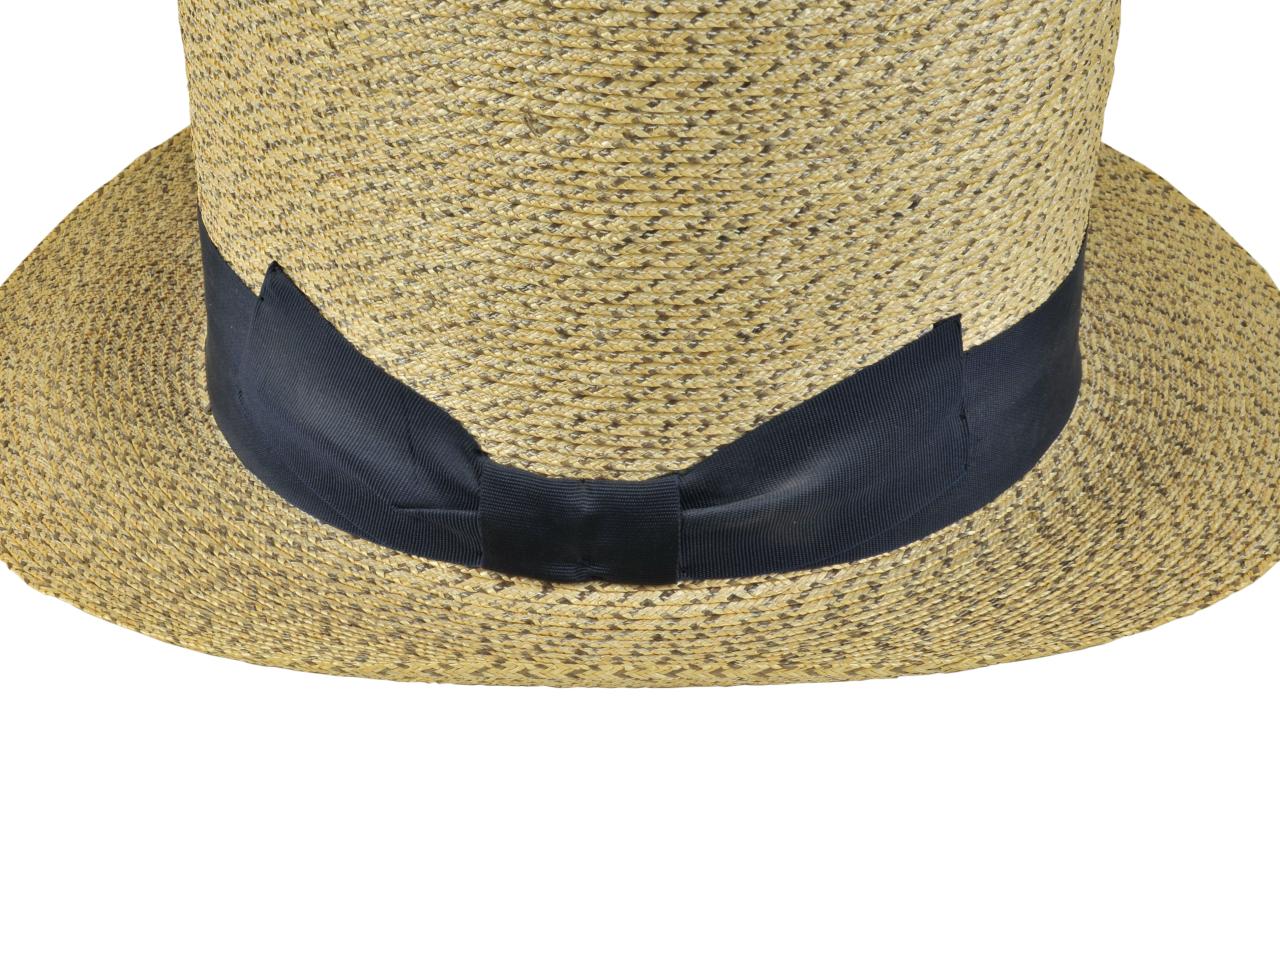 Detalle de ala y ornamentación de sombrero tipo Rugendas, tejido en paja teatina natural y teñida